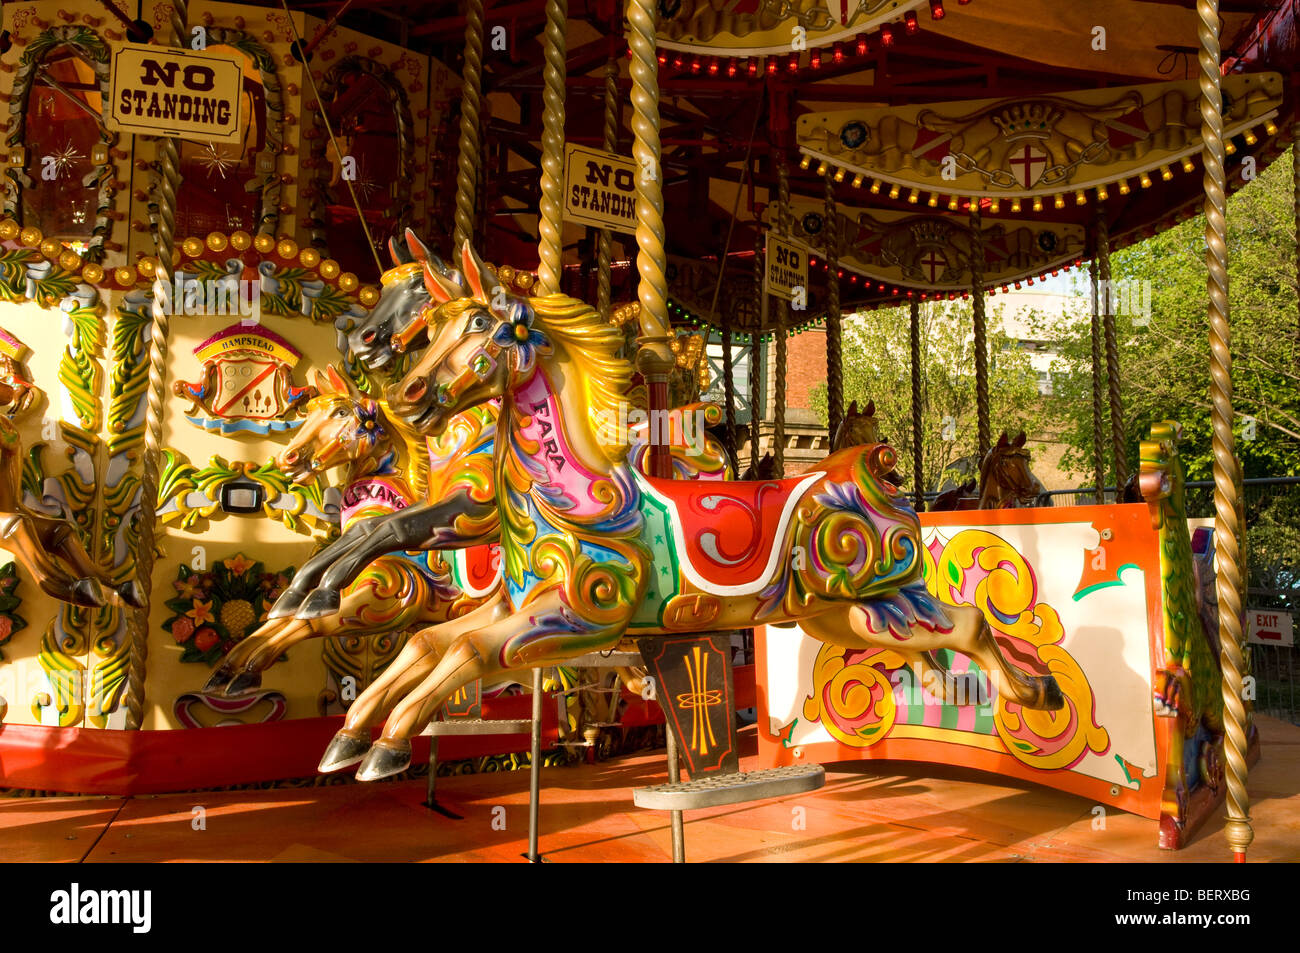 Traditionellen Pferdekarussell gemalt in leuchtenden Farben, London South Bank. Stockfoto